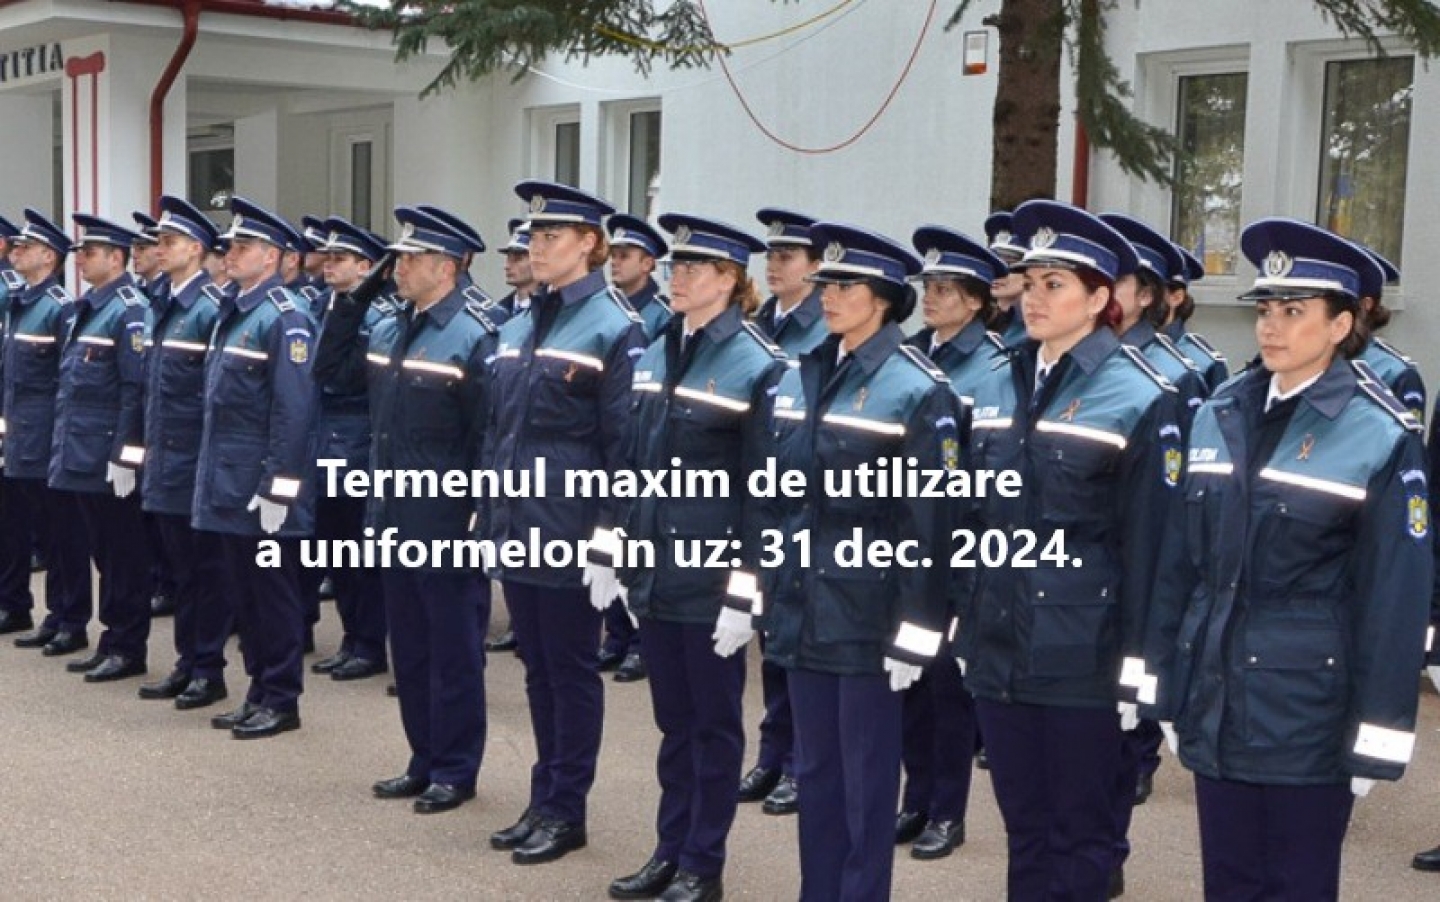 23.11.2021 - Proiectul OMAI privind noile uniforme și însemne ale structurilor polițienești, pus în dezbatere publică